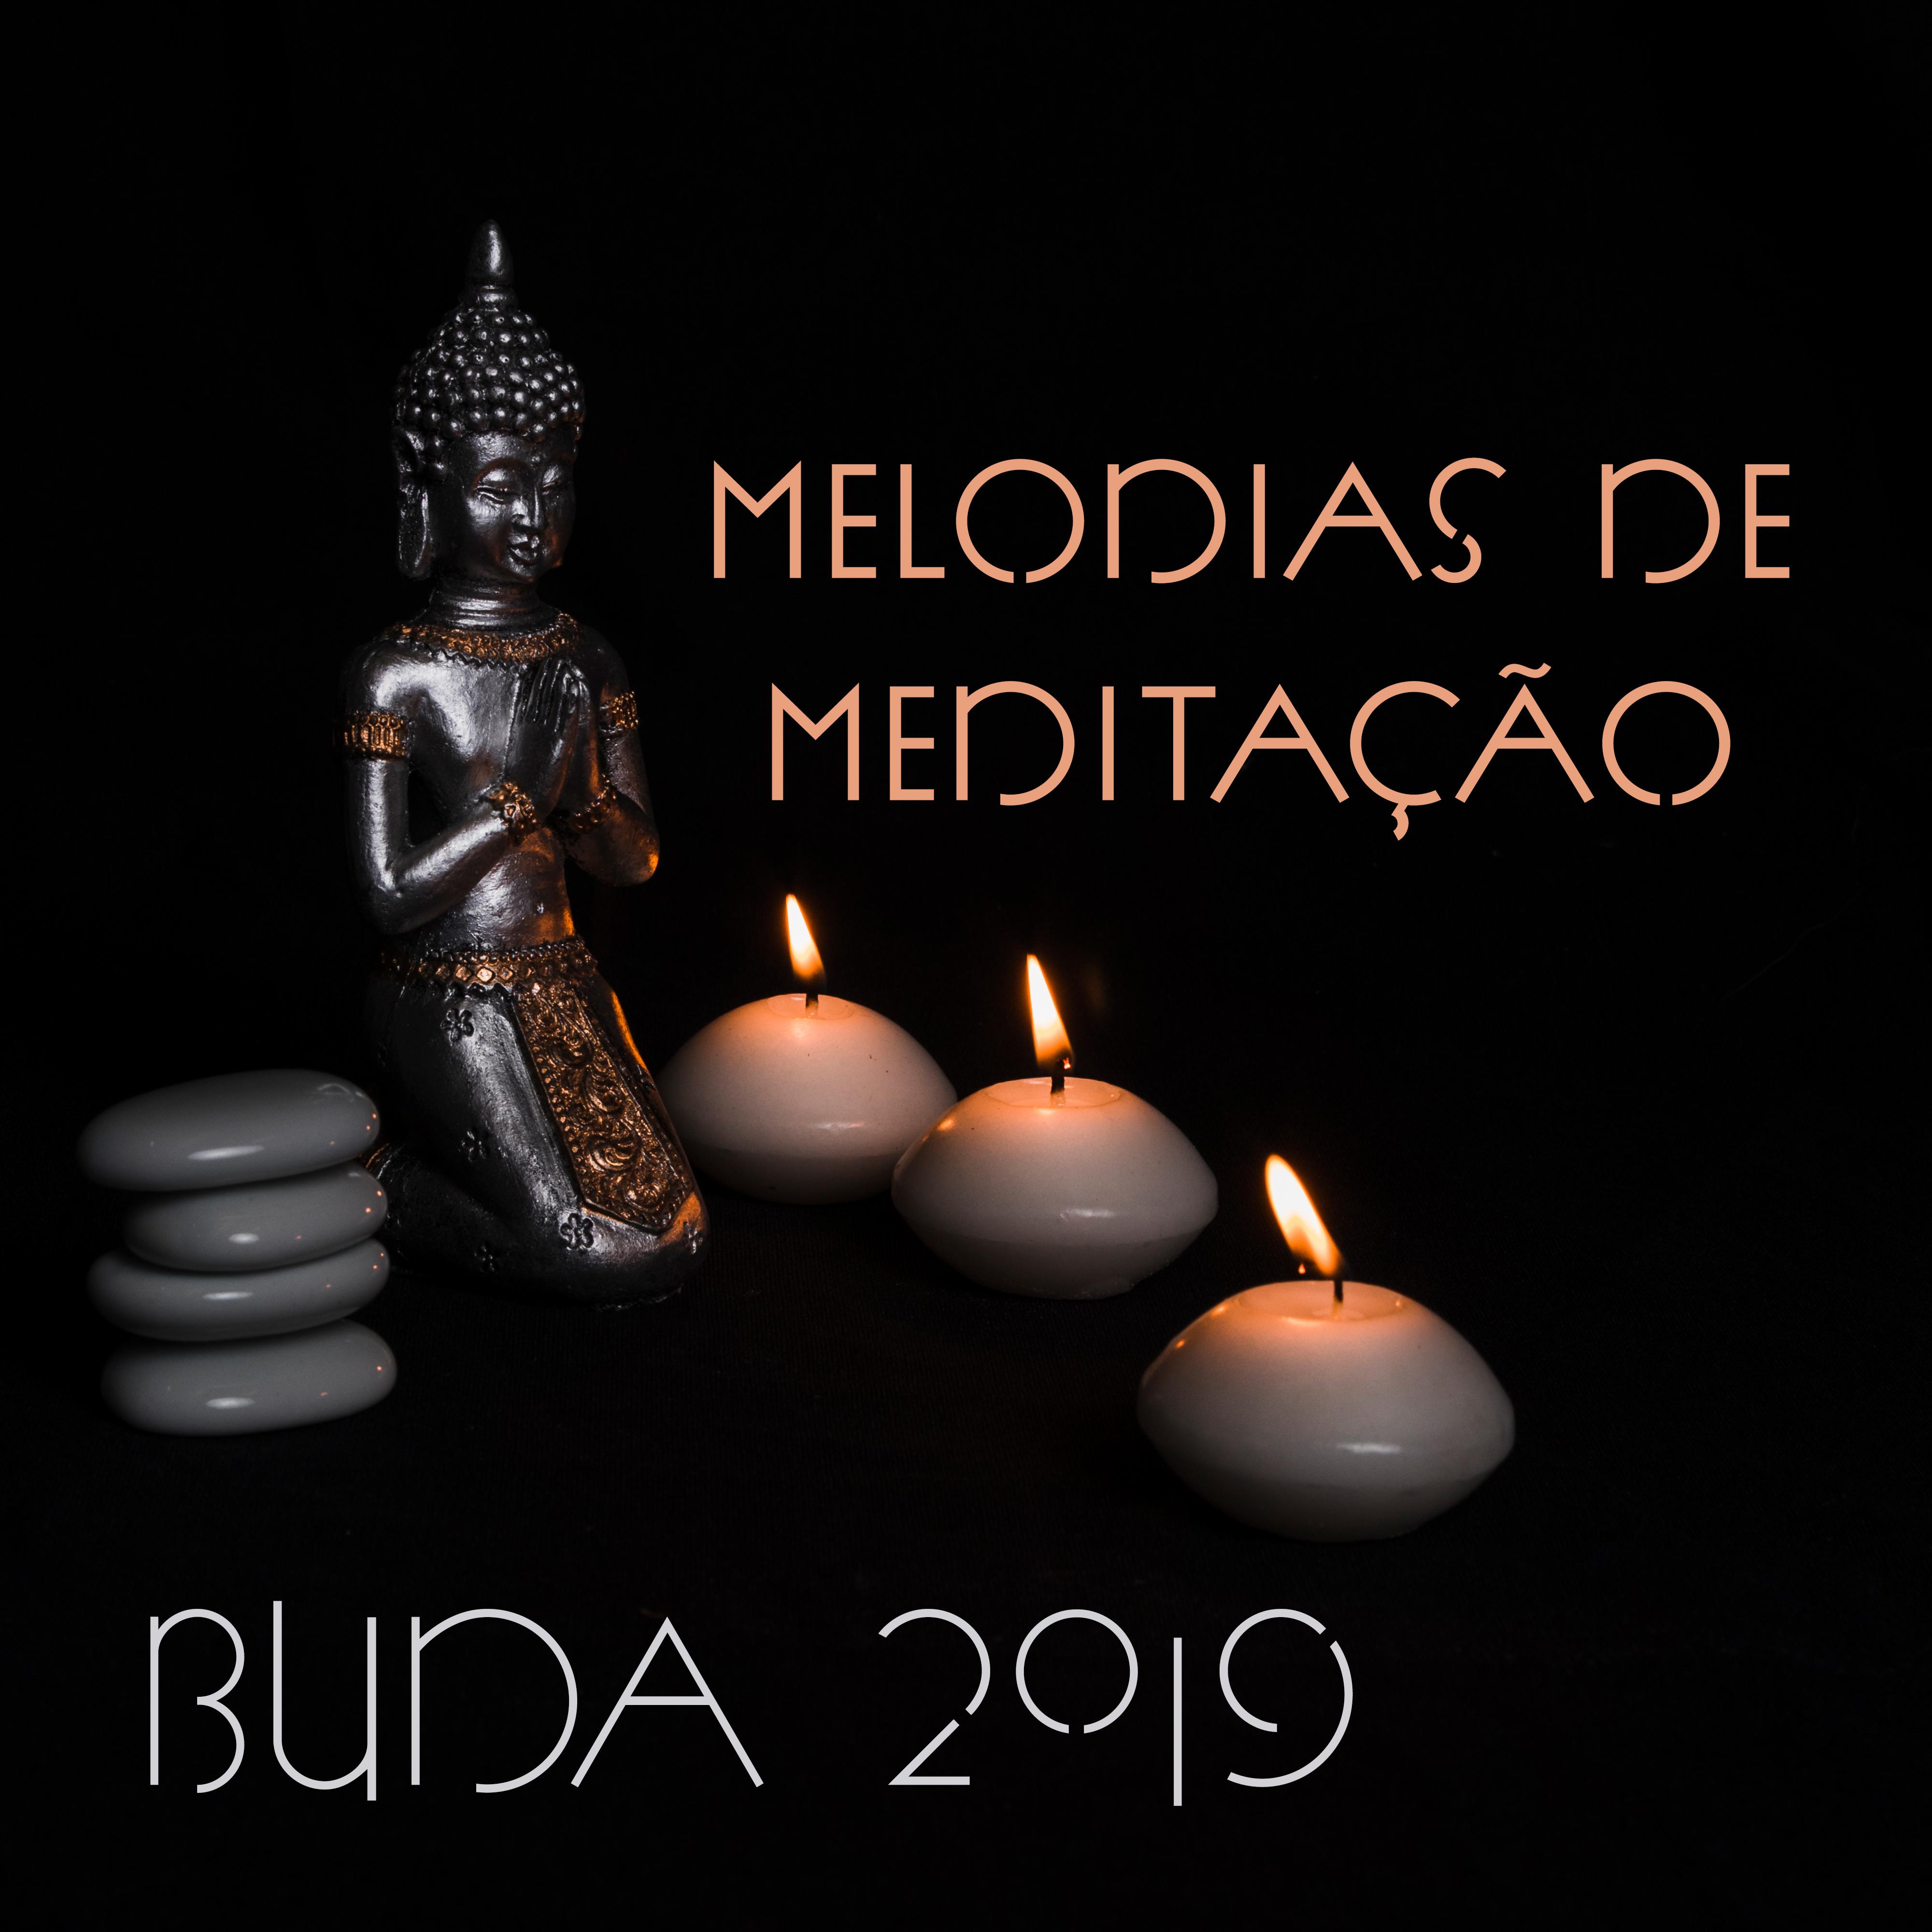 Melodias de Meditação Buda 2019